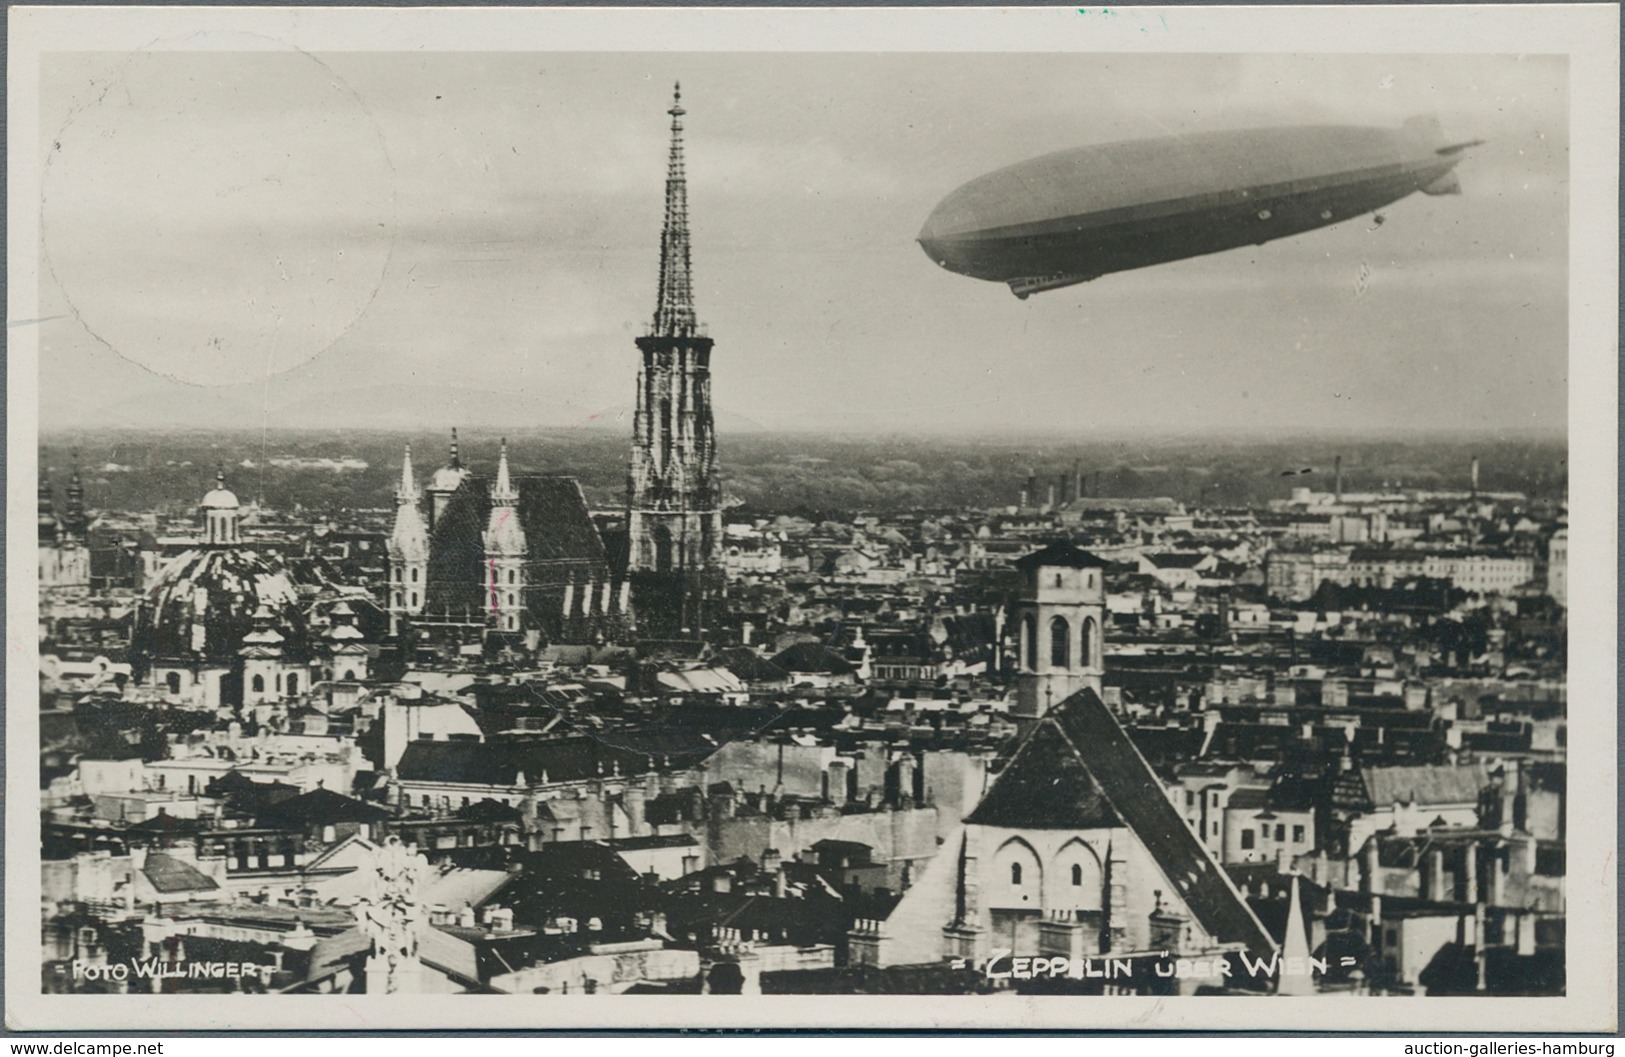 Zeppelinpost Europa: 1931, Rückfahrt Frankfurt-Friedrichshafen, Zeppelin-Ansichtskarte Nach Wien Mit - Otros - Europa